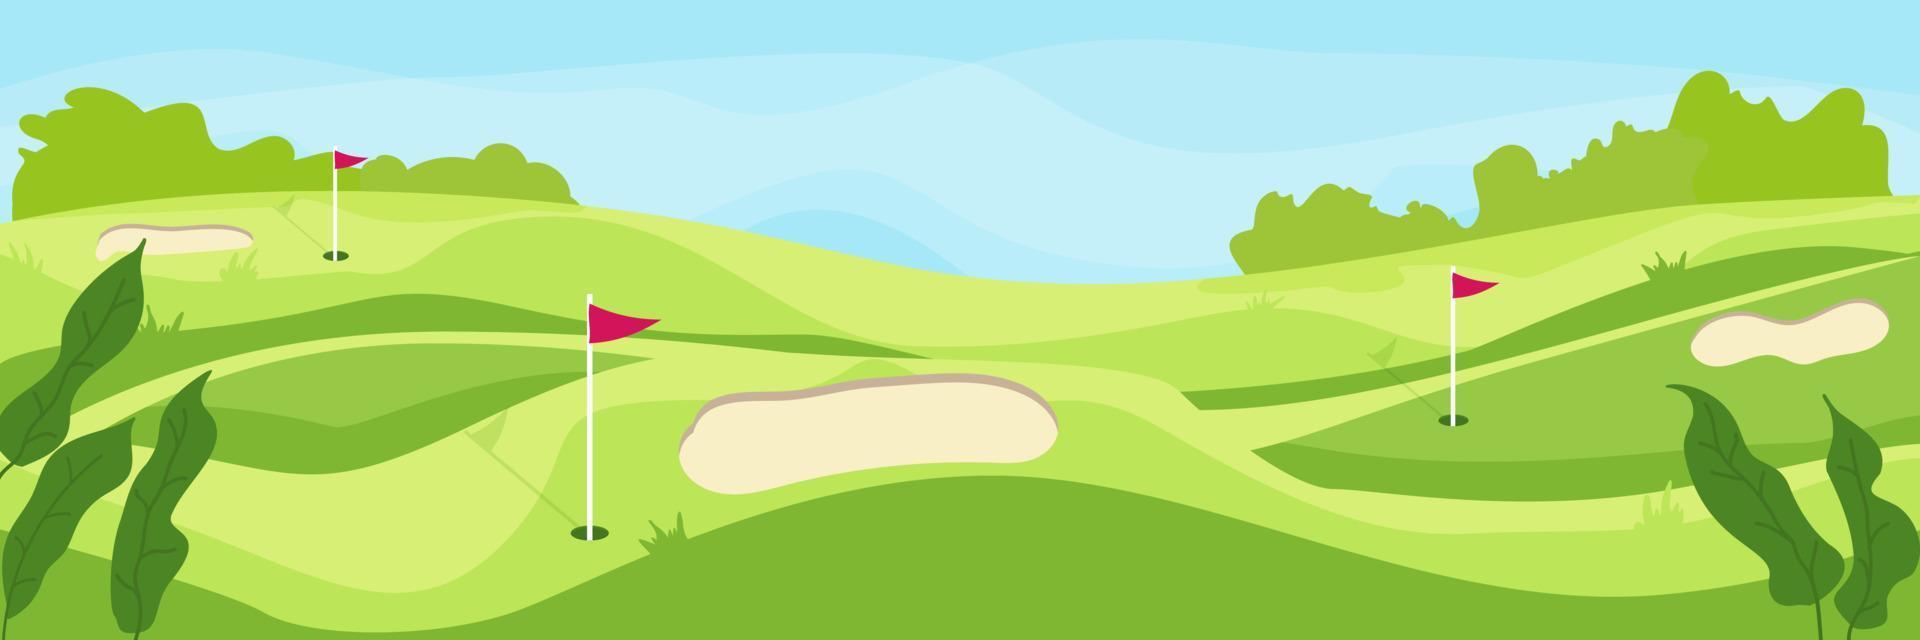 golf kurs vektor illustration. populär sport aktivitet fält.